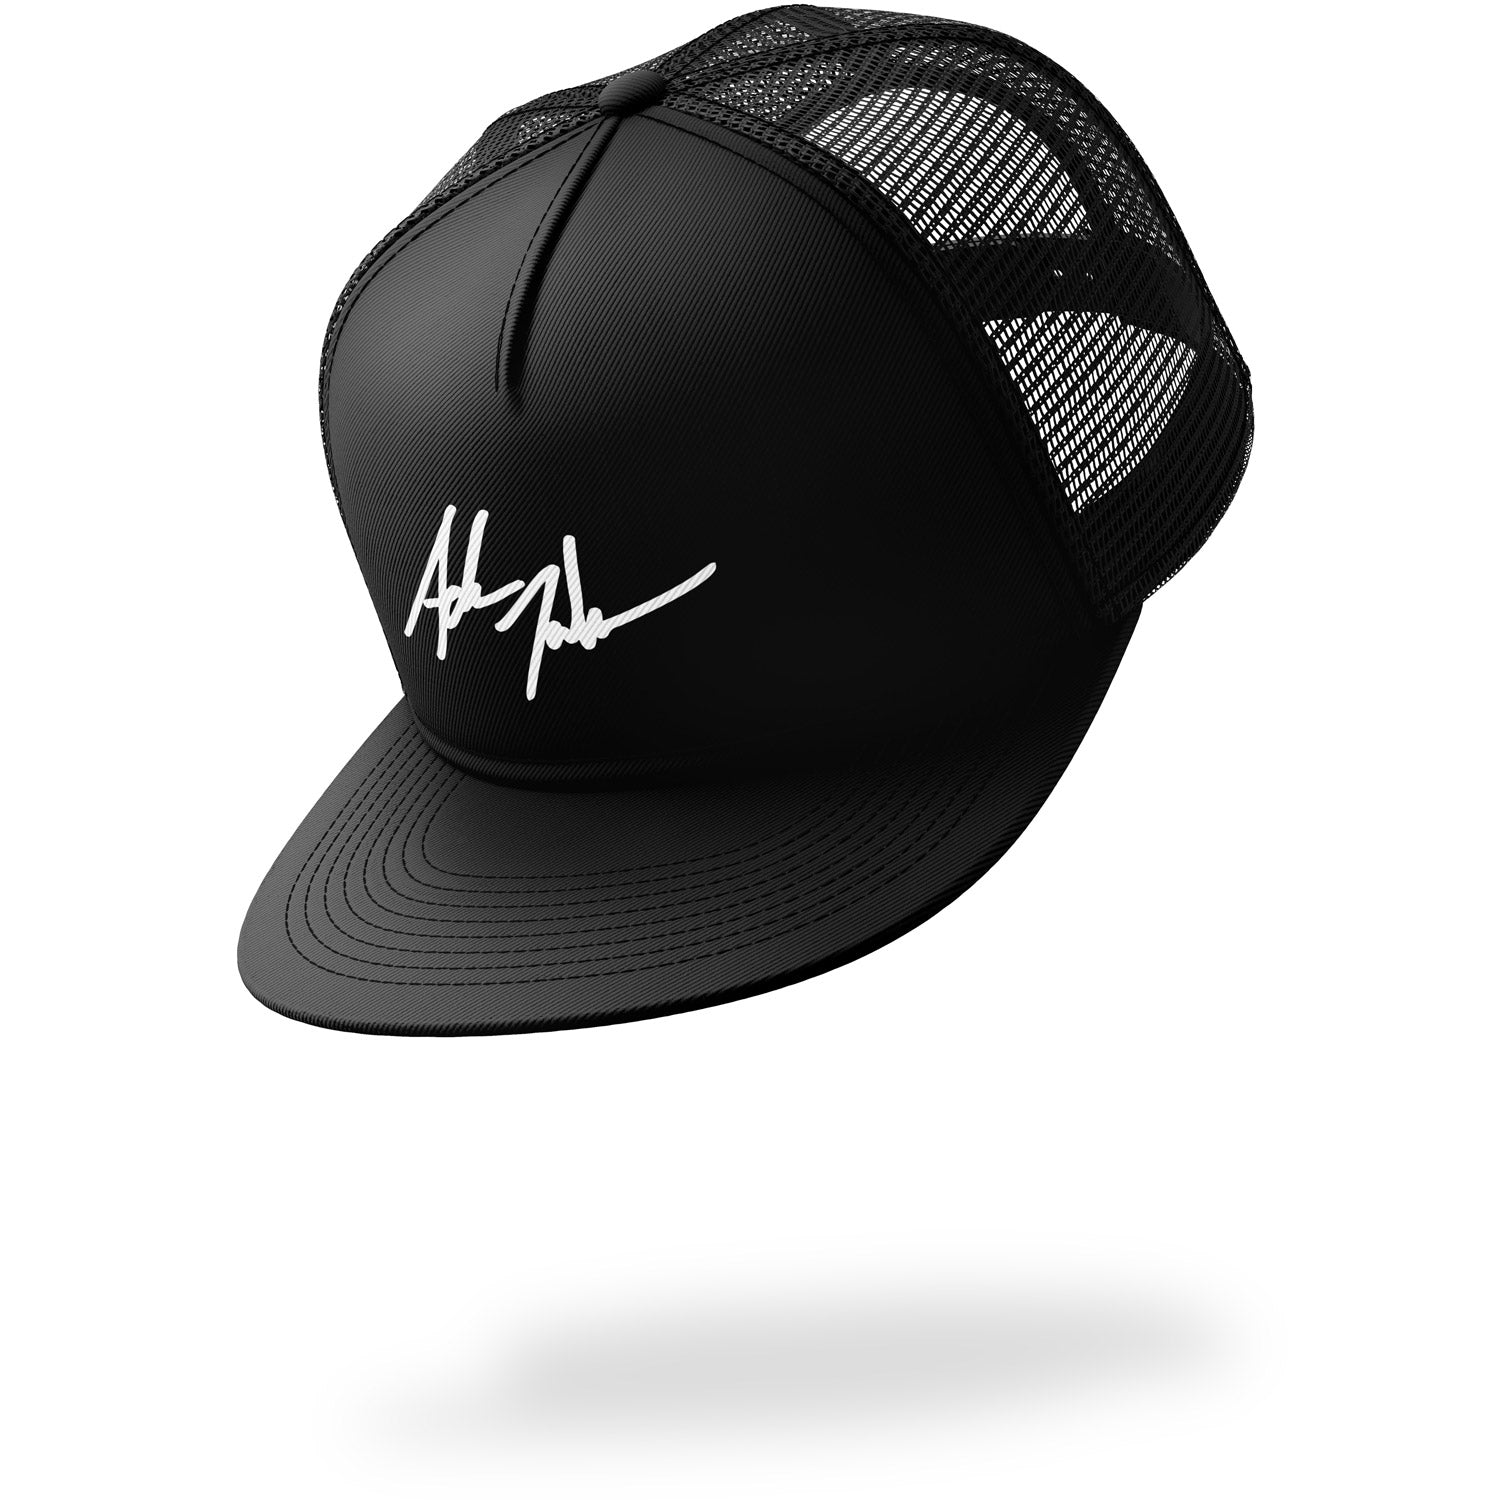 Adam Johnson Signature Hat